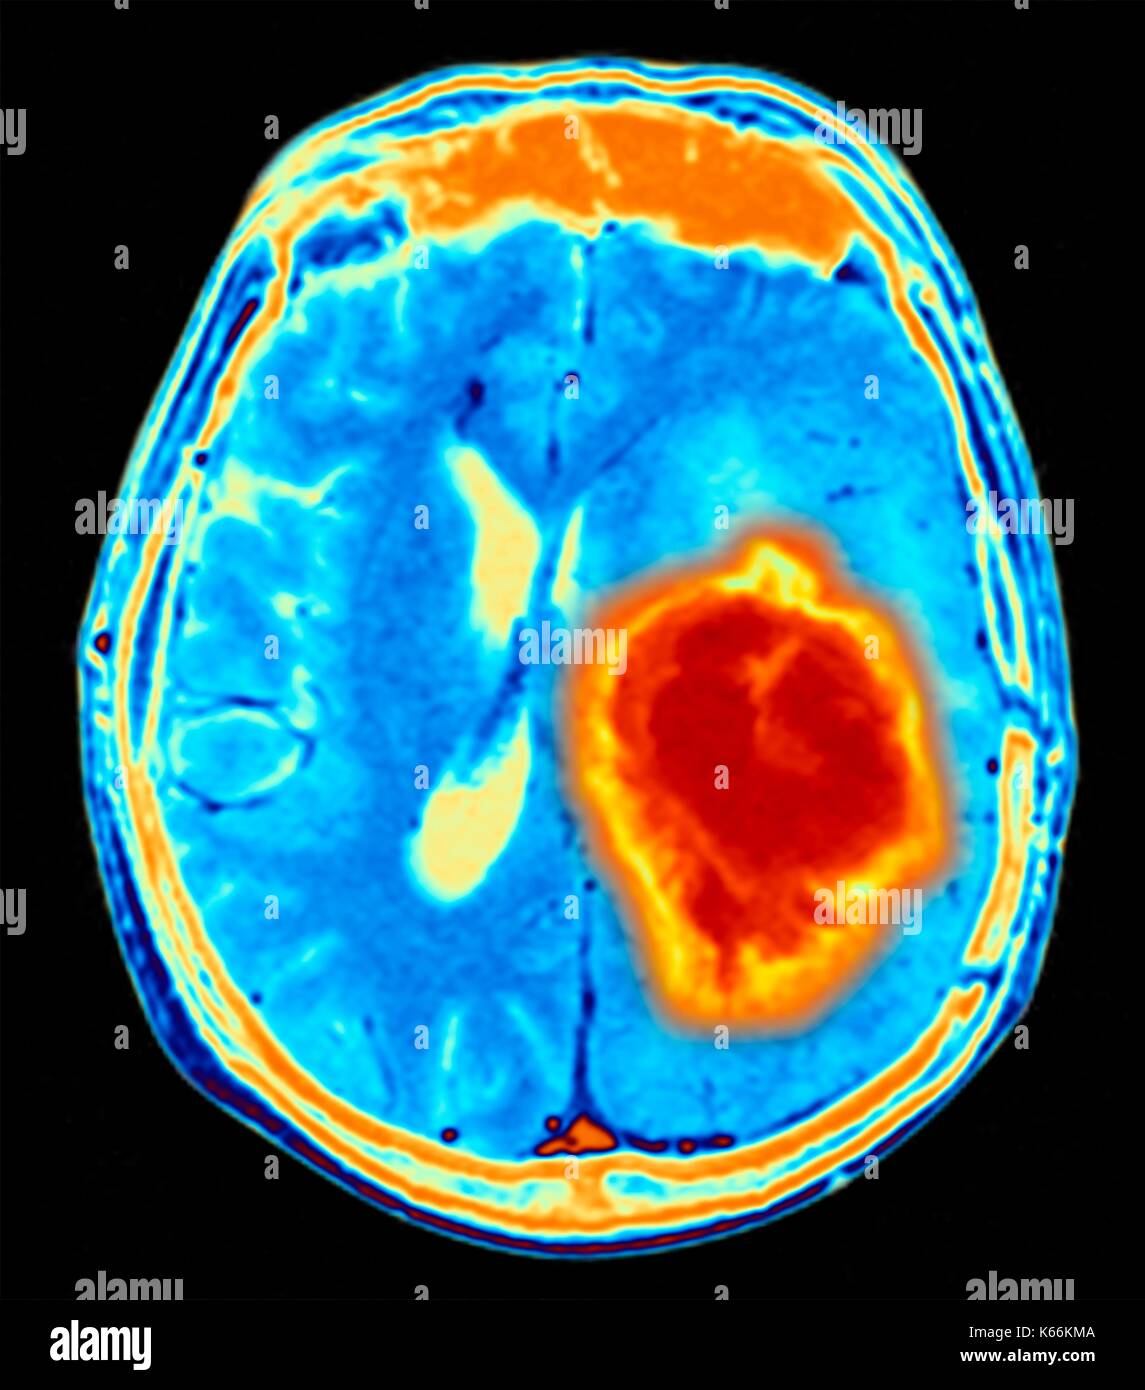 Hirntumor. Farbige Magnetresonanztomographie (MRT) Scan eines axialen Schnitt durch das Gehirn mit einem metastasierten Tumor. Unten links ist der Tumor (rot-gelb) Dieser Tumor innerhalb einer Gehirnhälfte erfolgt ist; die andere Hemisphäre ist auf der rechten Seite. Die Augäpfel - nicht sichtbar - sind oben. Metastasierendem Krebs ist eine Krankheit, die vom Krebs an anderer Stelle im Körper. Metastasierendem malignen Hirntumoren sind. In der Regel verursachen Sie Gehirn Kompression und Nervenschäden Stockfoto